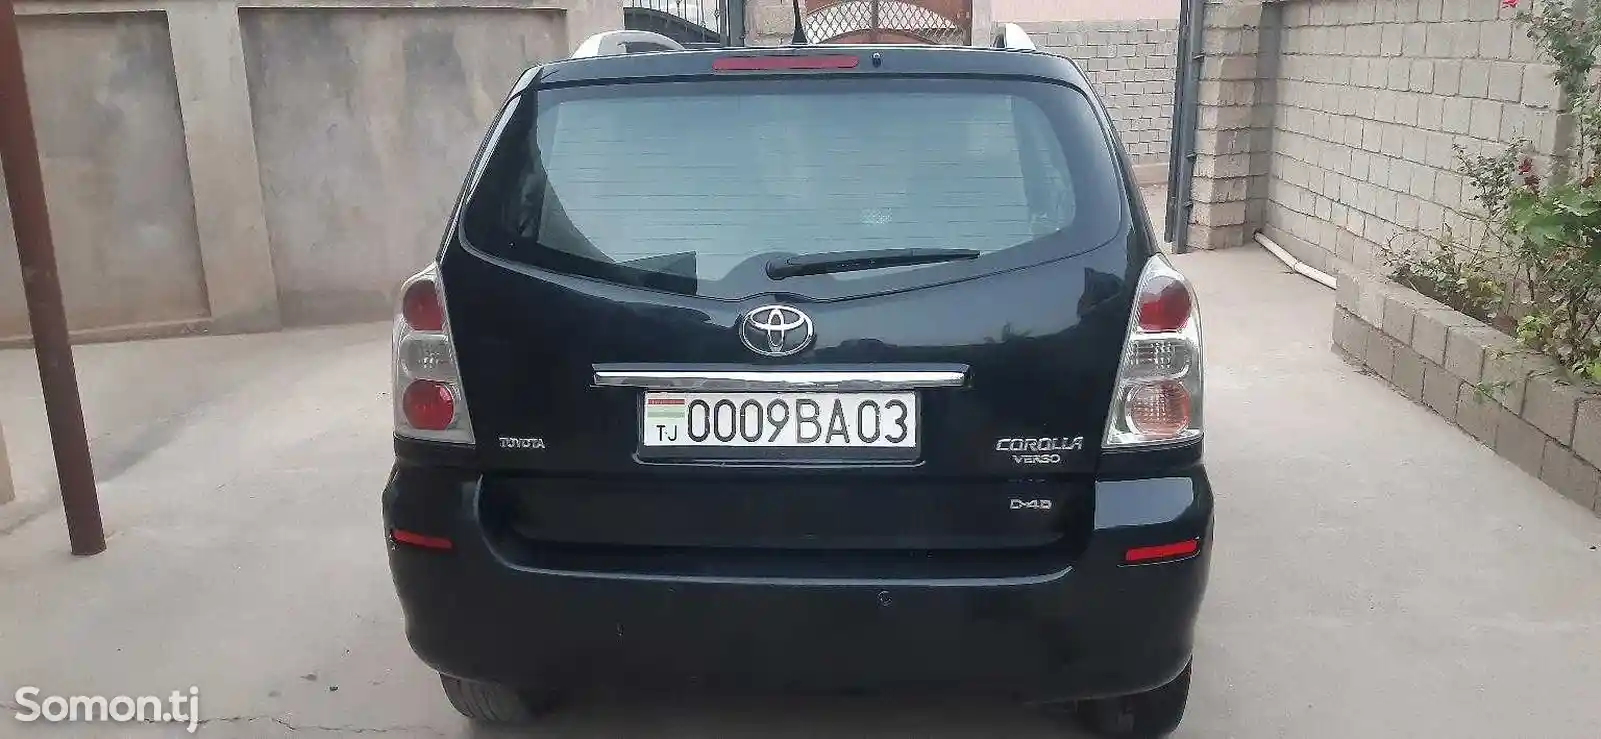 Toyota Corolla Verso, 2008-2